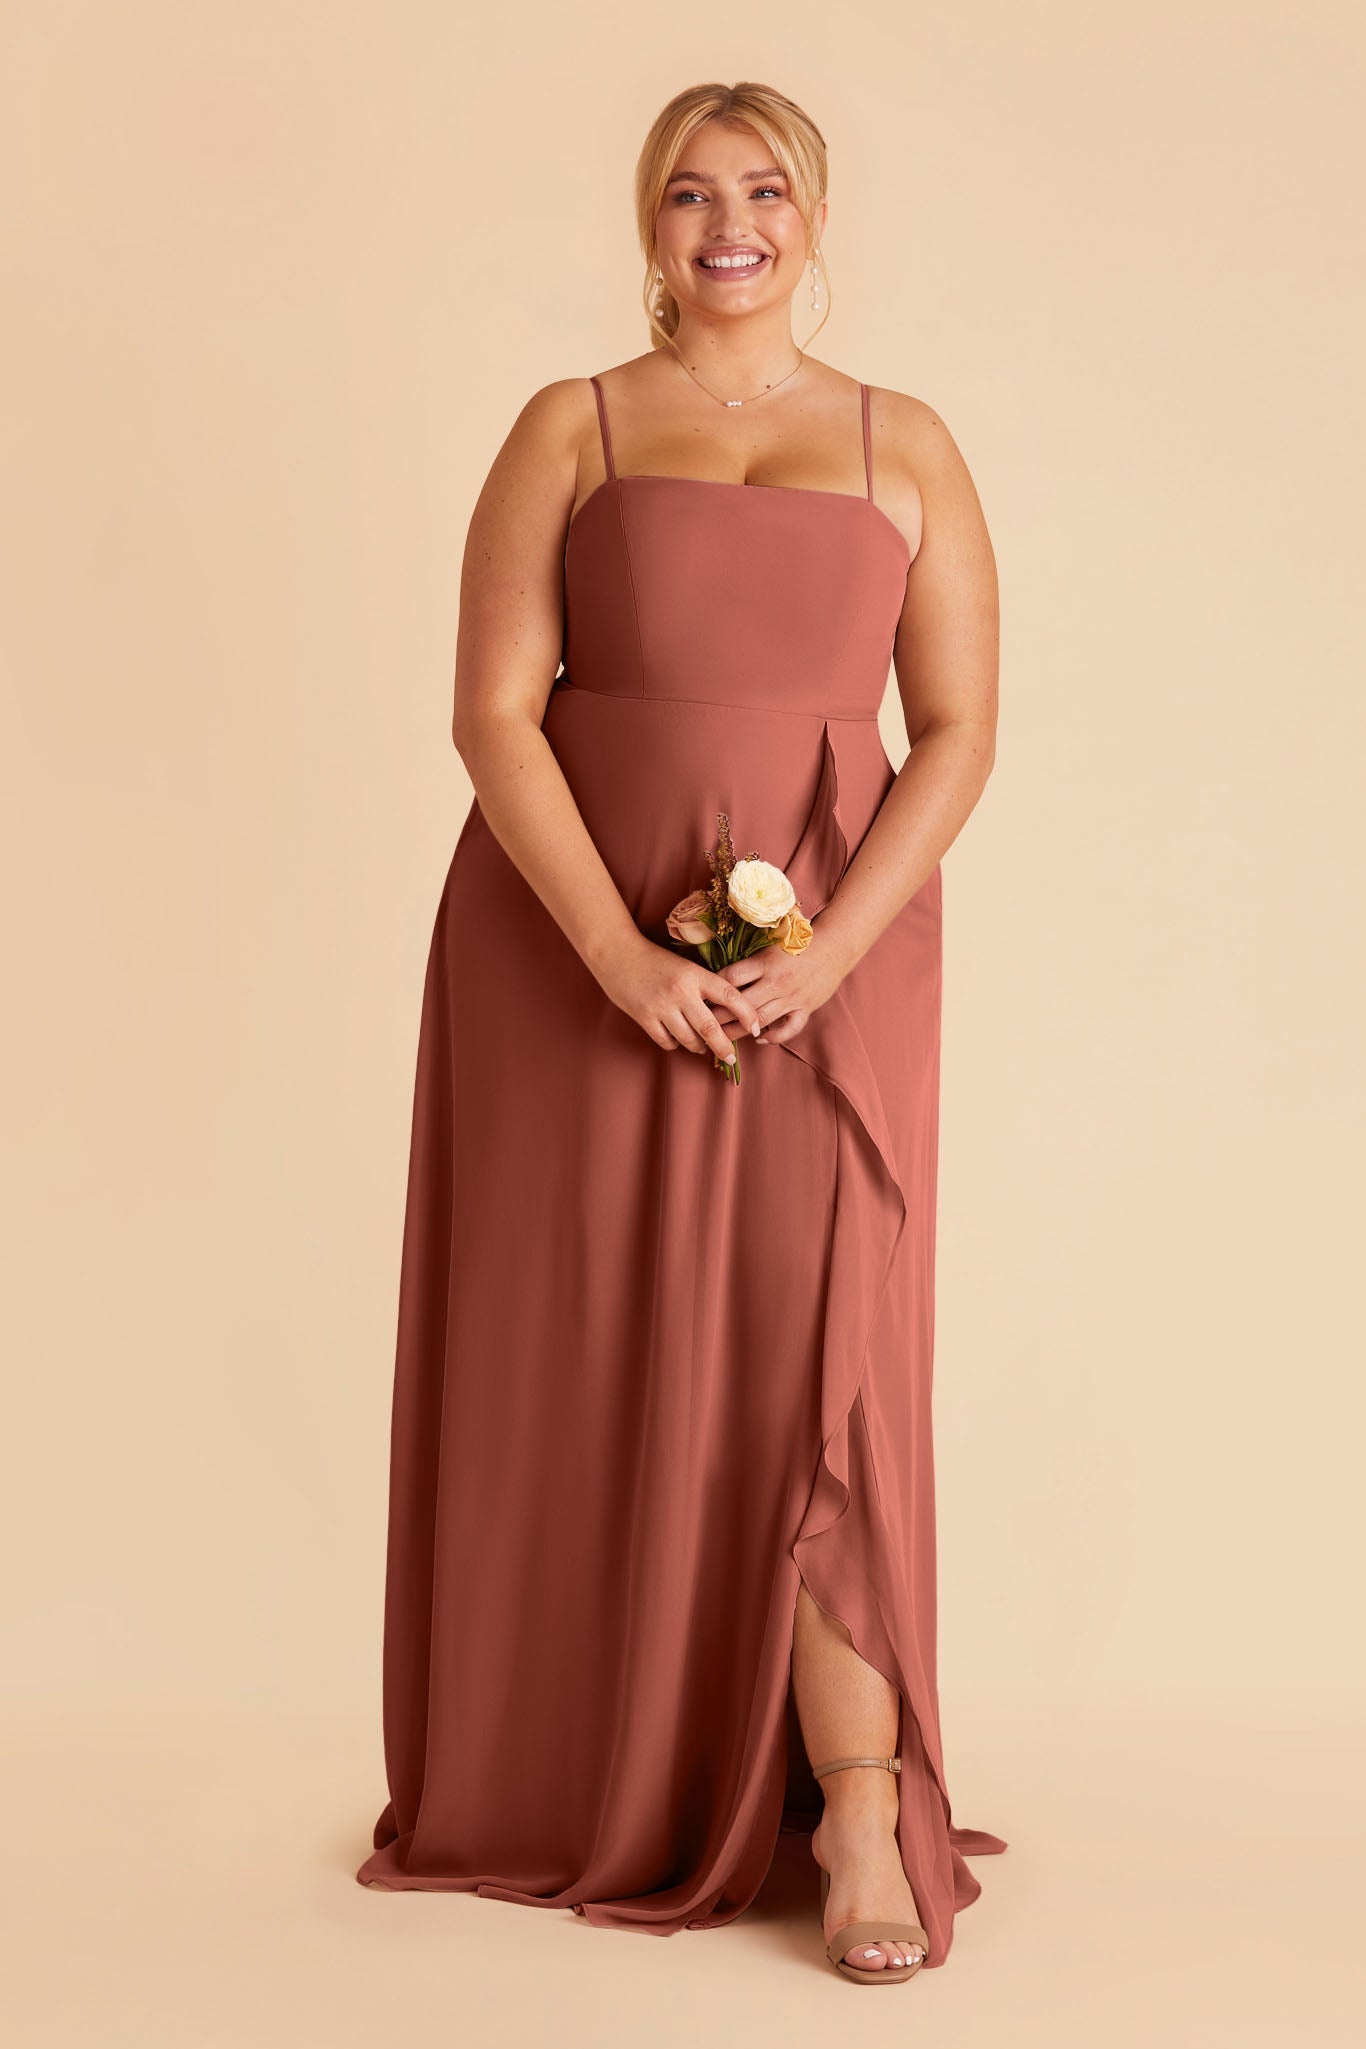 Winnie Convertible Chiffon Dress - Desert Rose